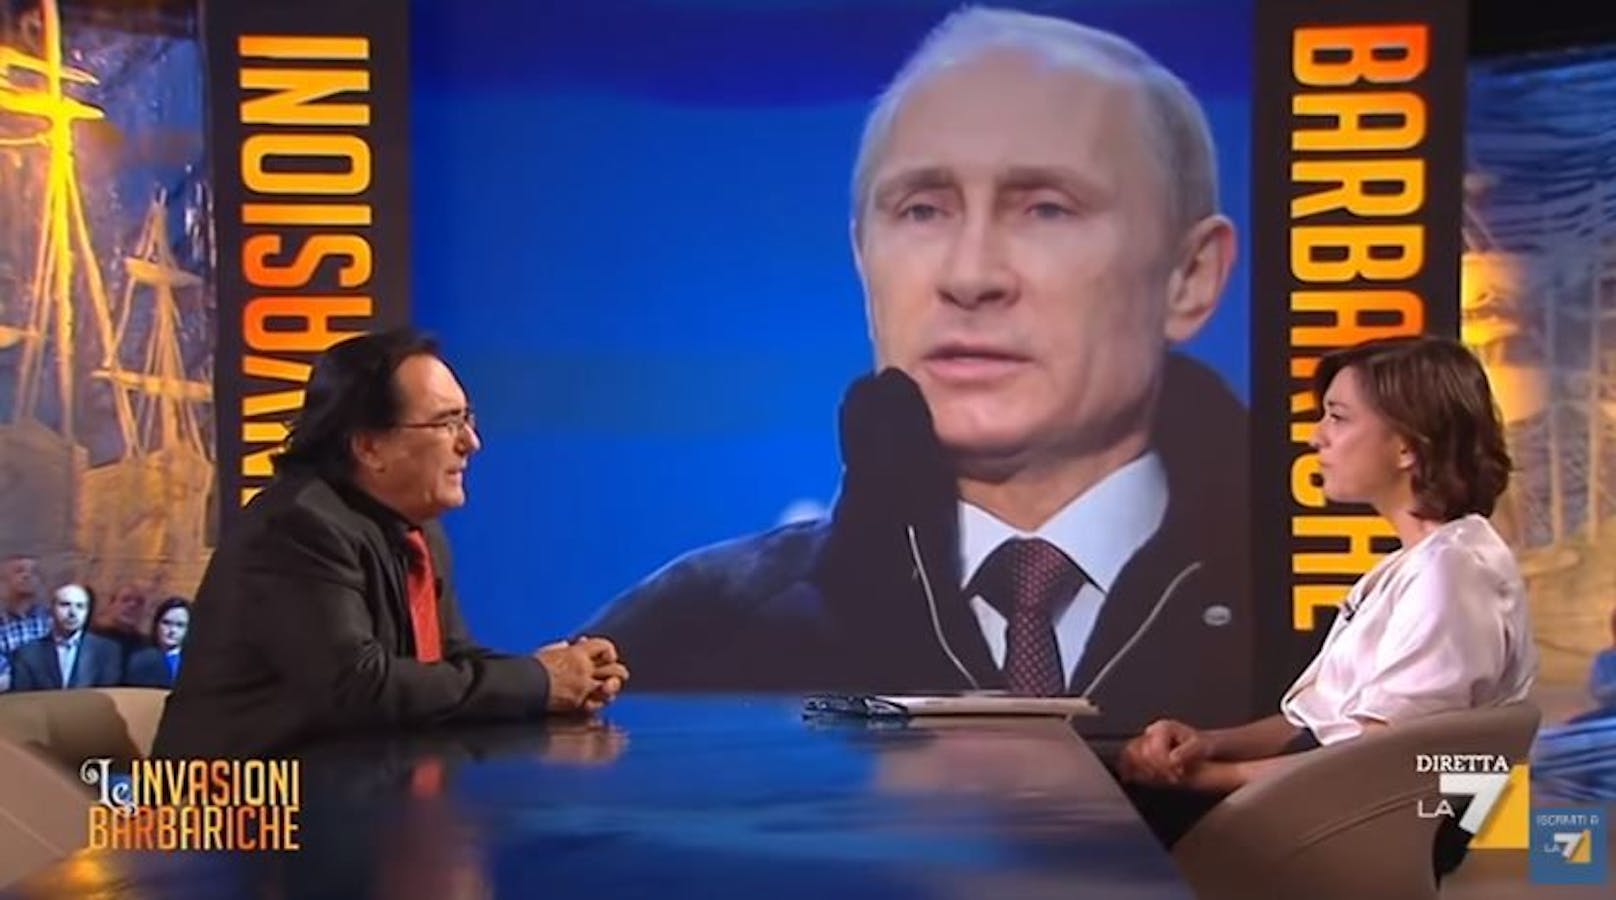 In einem TV-Interview mit dem italienischen Sender "La7" sagte <strong>Al Bano</strong> 2014 über Putin: "Niemand ist perfekt."